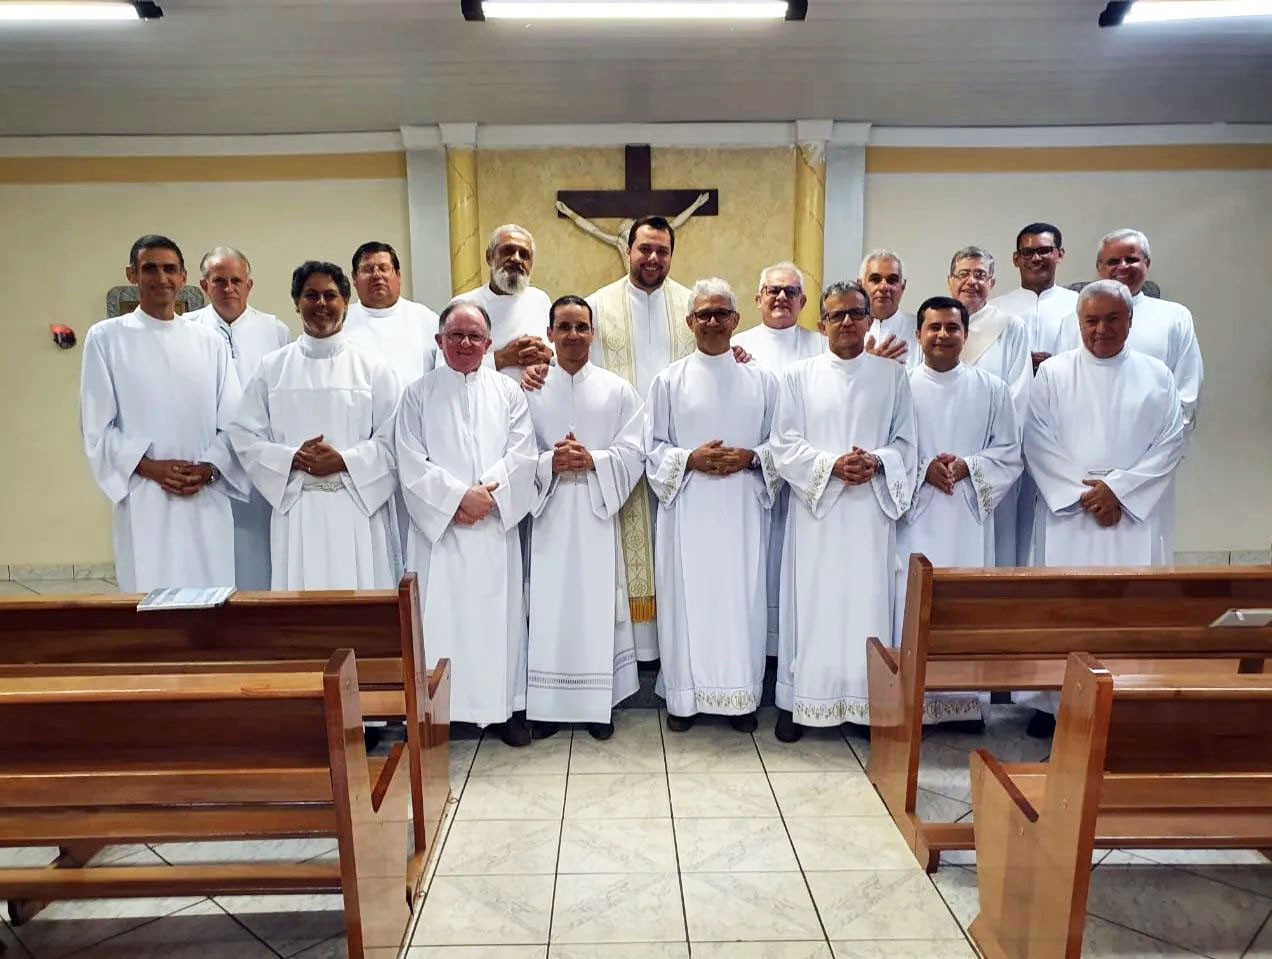 Retiro prepara candidatos ao diaconato permanente para ordenações em maio e junho